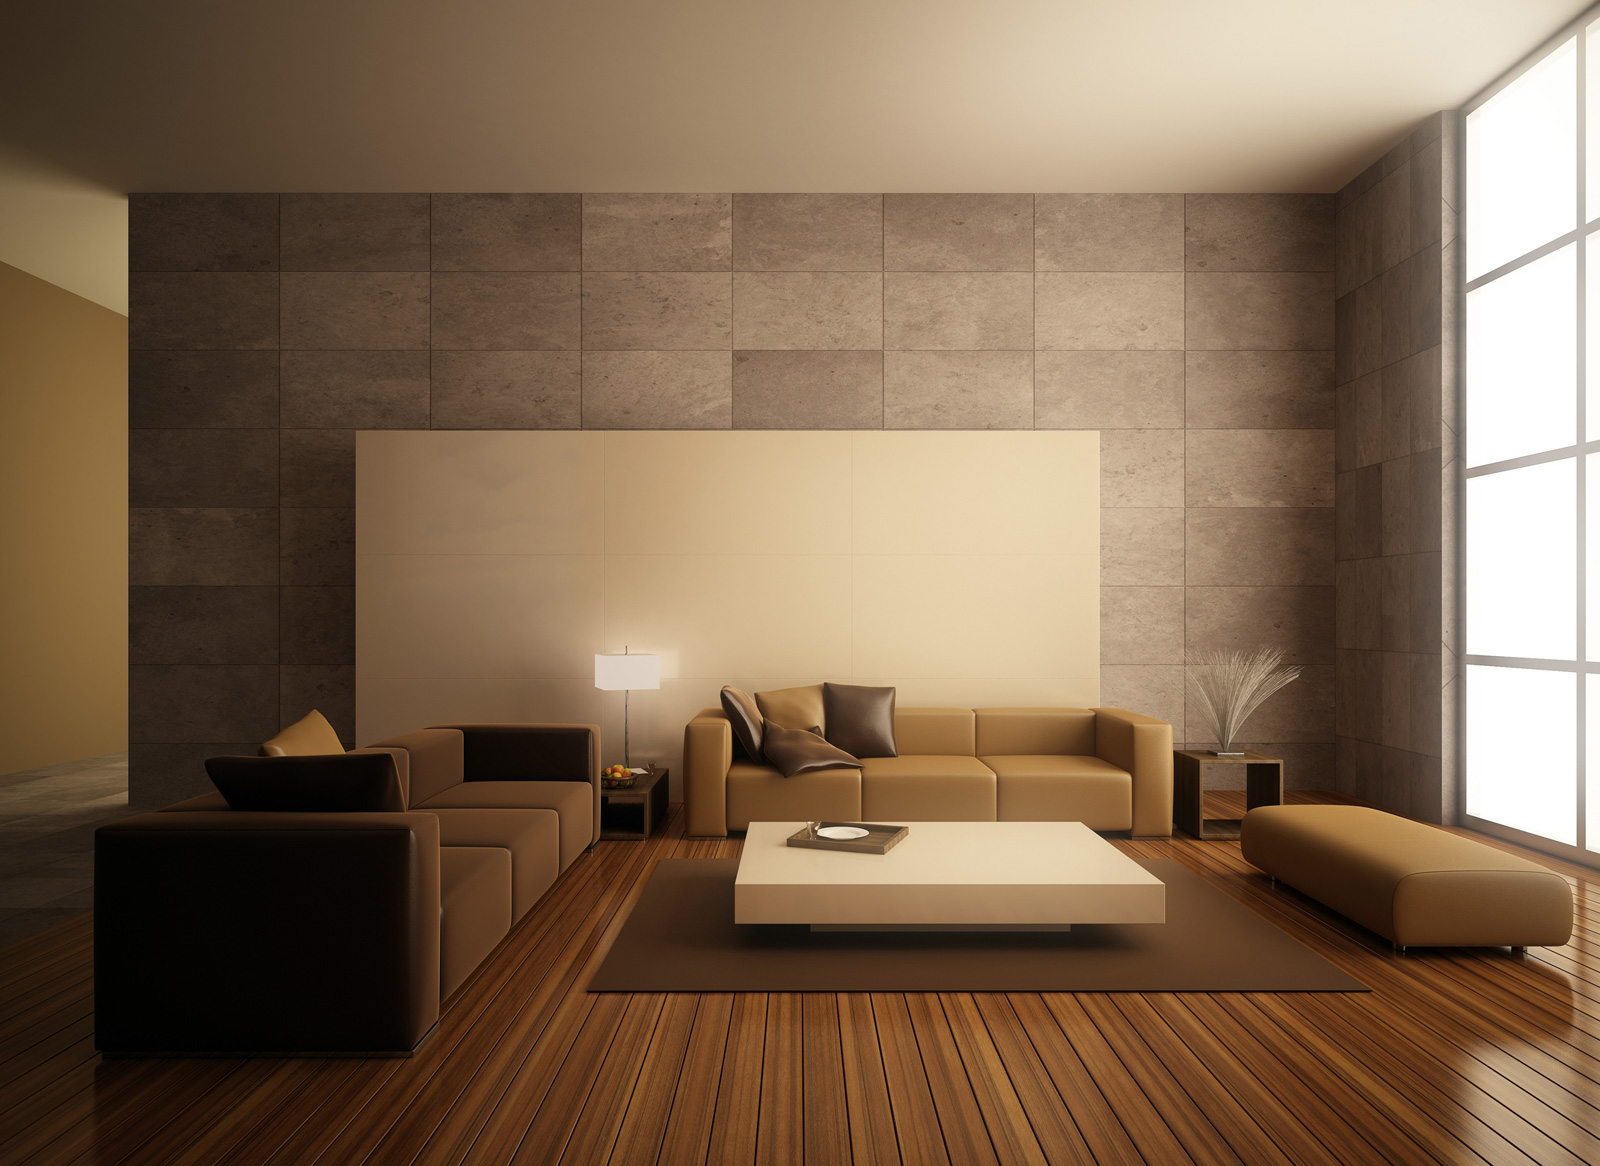 16 breathtaking minimalist interior design ideas for Idee casa minimalista